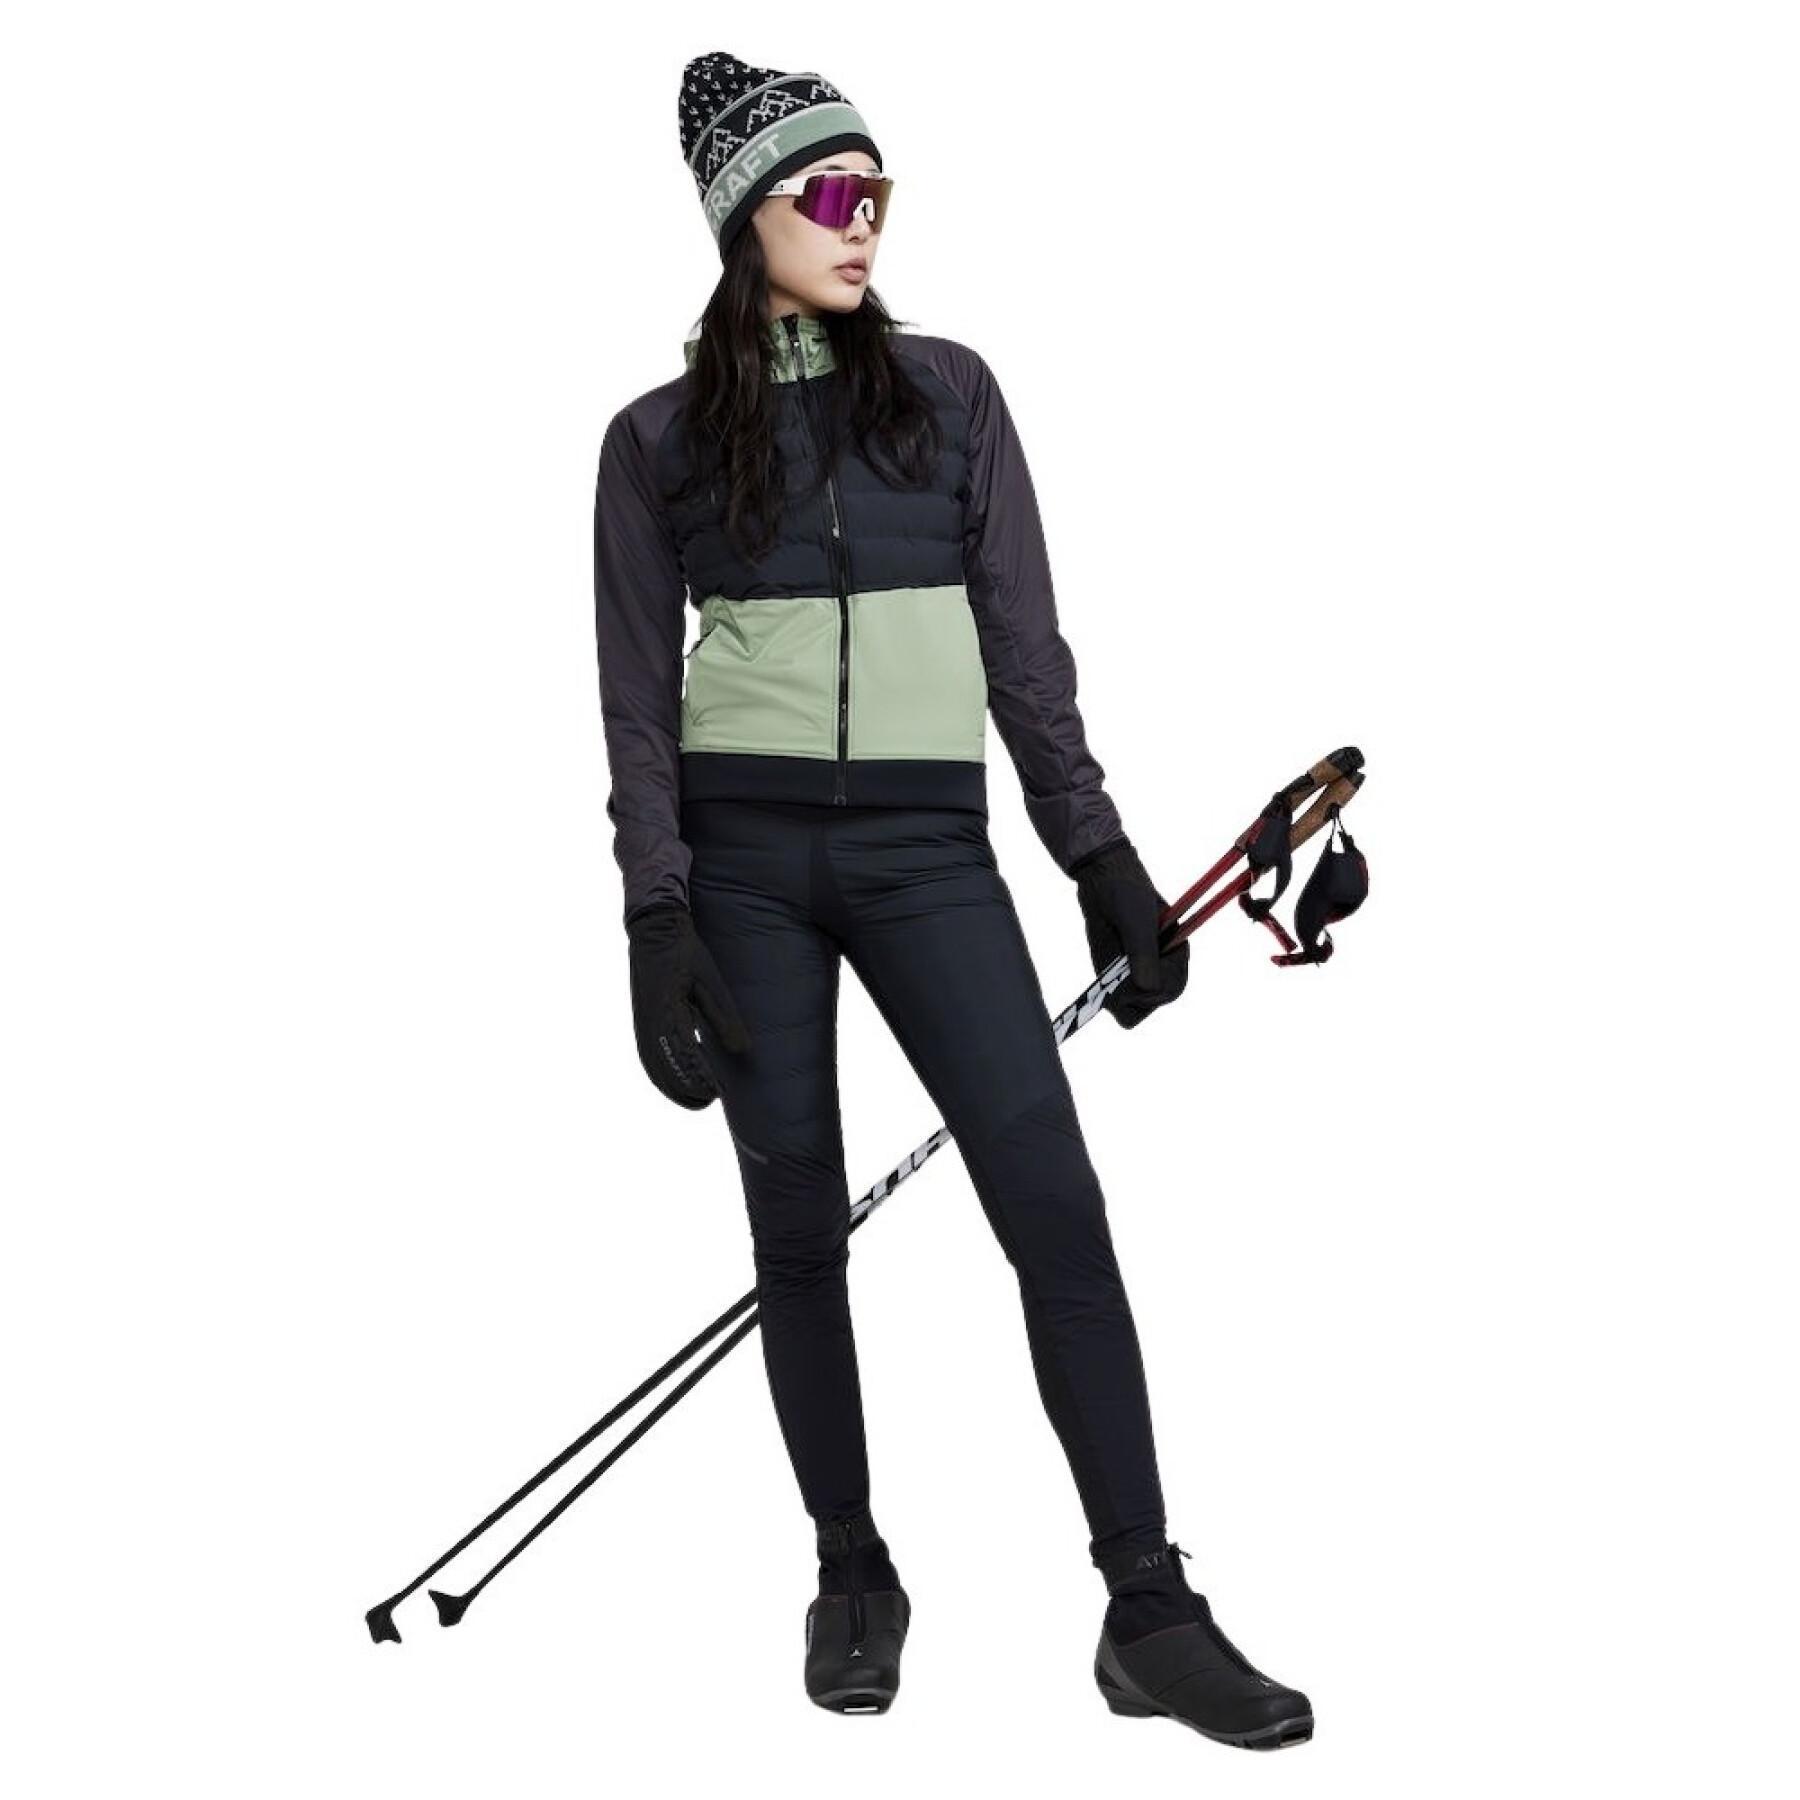 Women's ski jacket Craft Pursuit Thermal